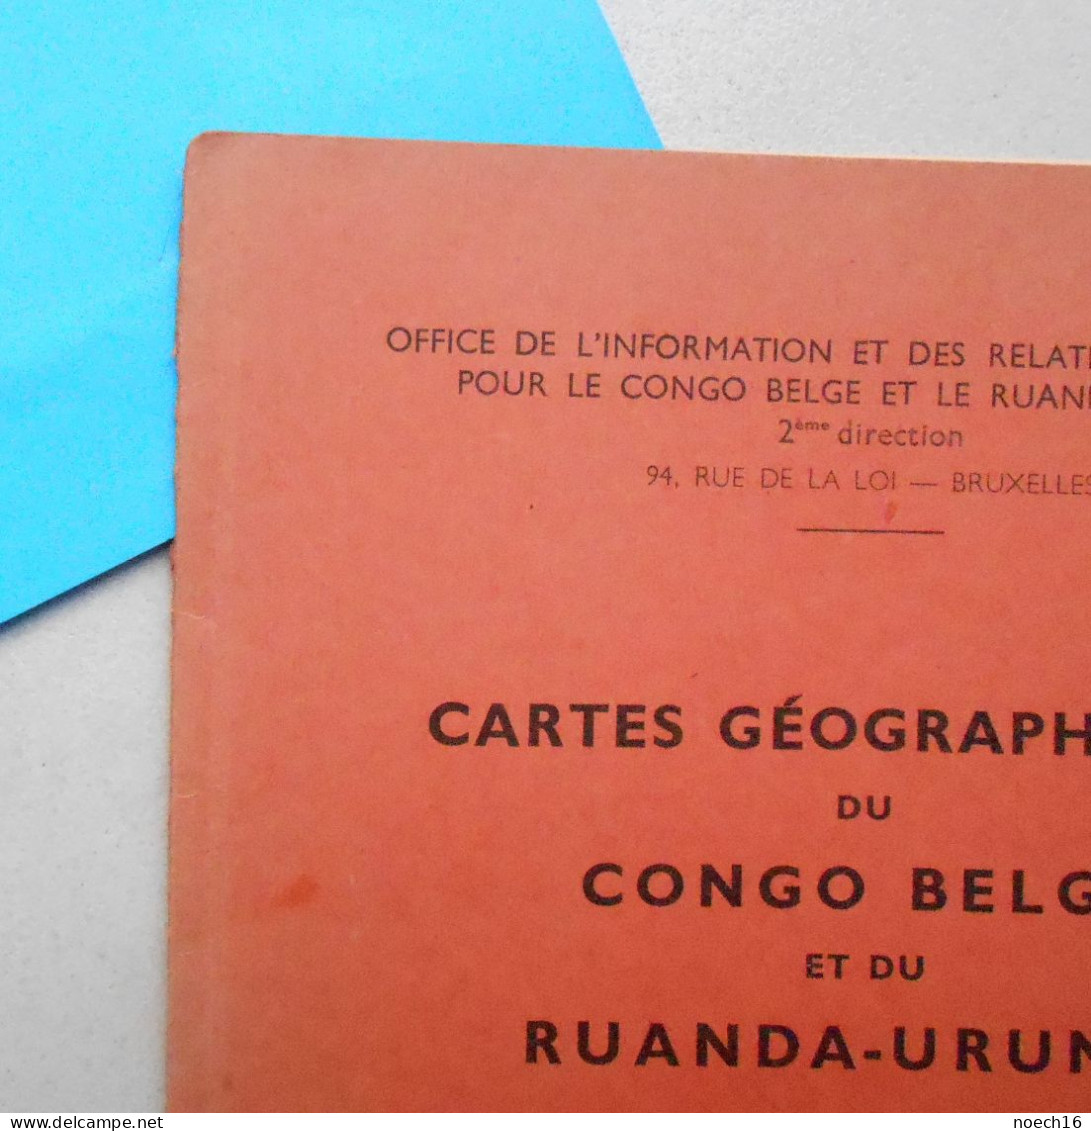 1956 Cartes Géographiques Du Congo Belge Et Du Ruanda-Urundi - Géographie